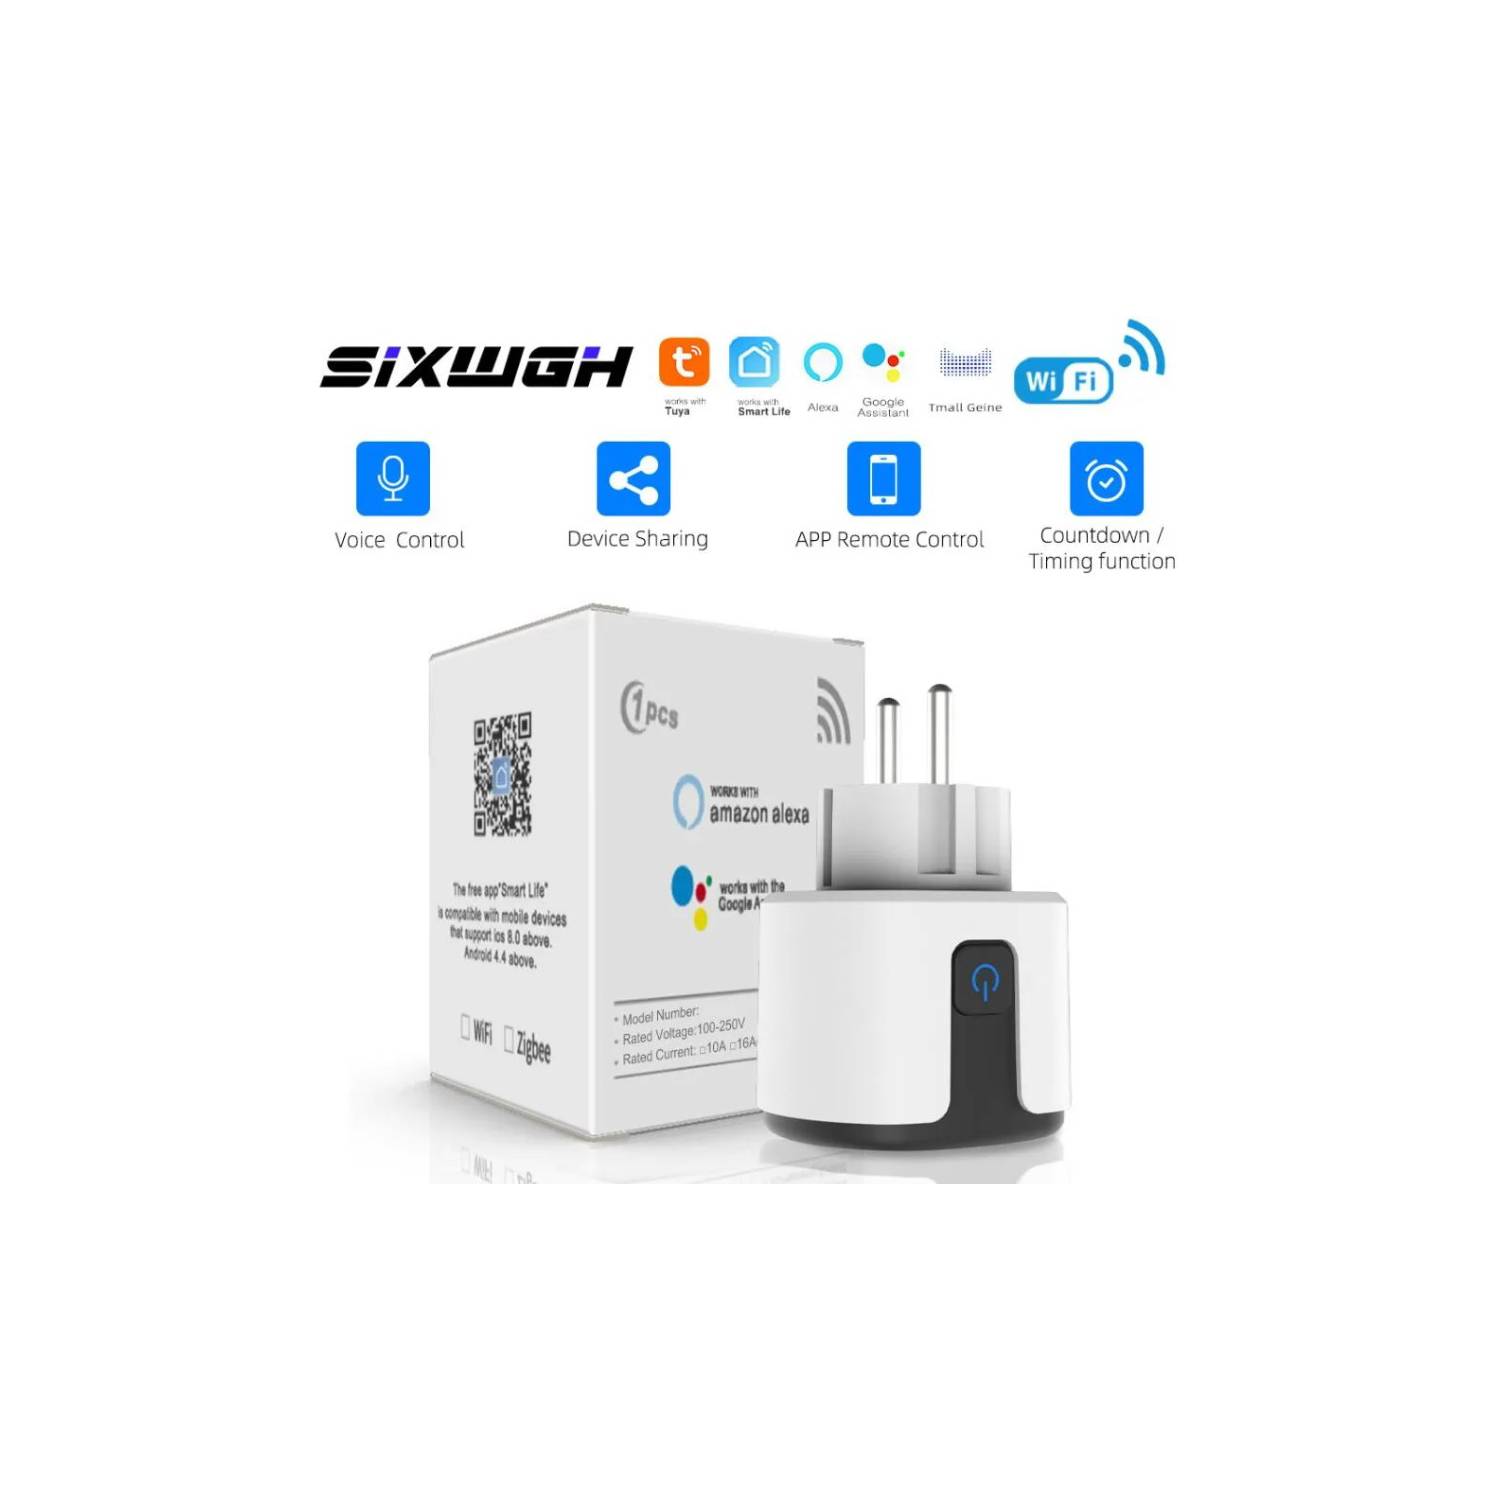 Comprar Enchufe inteligente Homekit con Wifi, enchufe europeo de 16a,  Monitor de potencia, función de temporizador para productos Apple,  compatible con Google Home Smartthings Siri Alexa